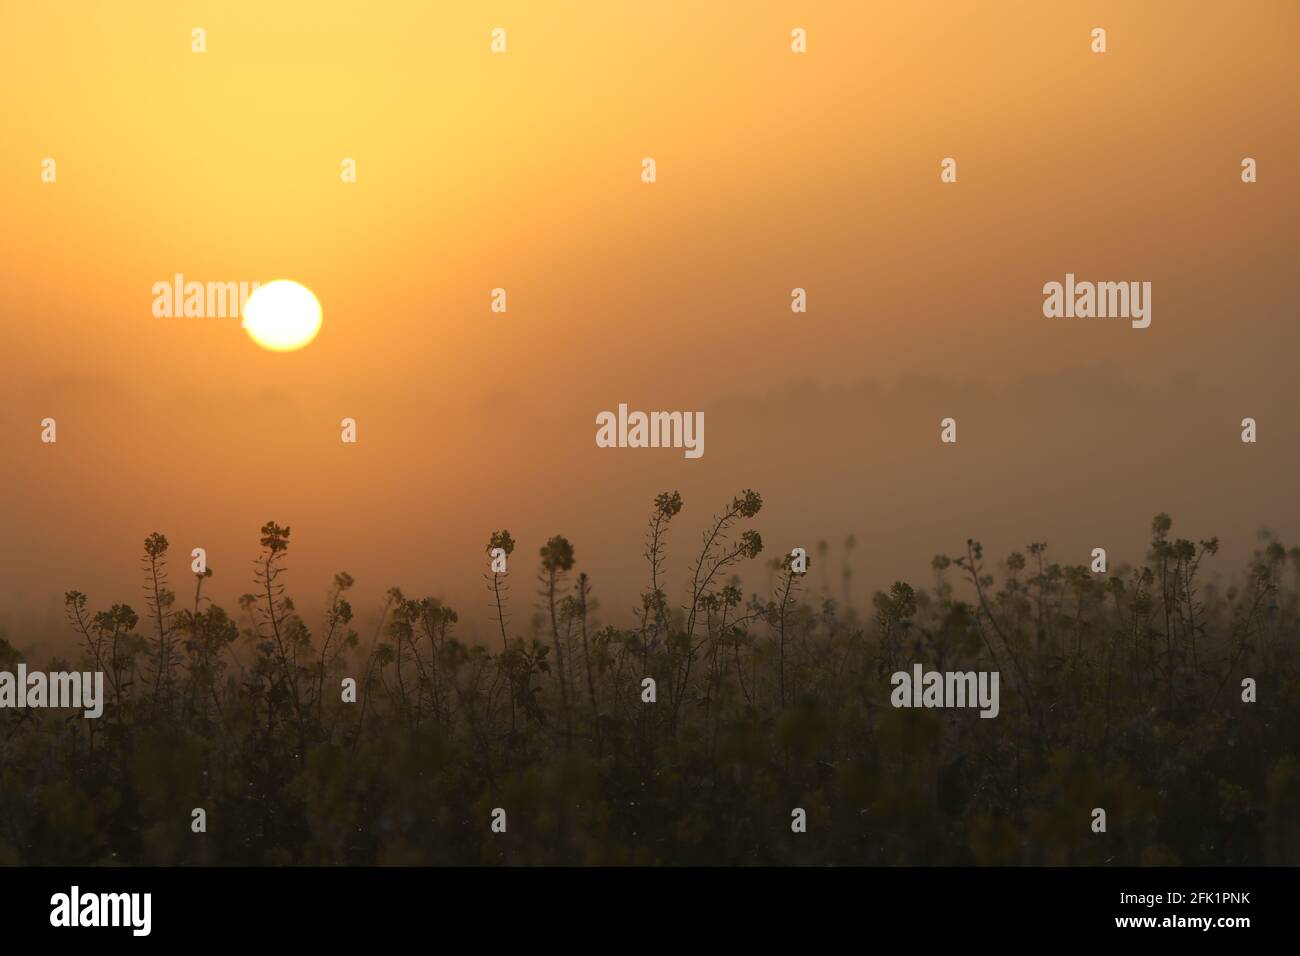 Sunrise foggy Morning   sunrise with fog   Emsland/Germany Stock Photo